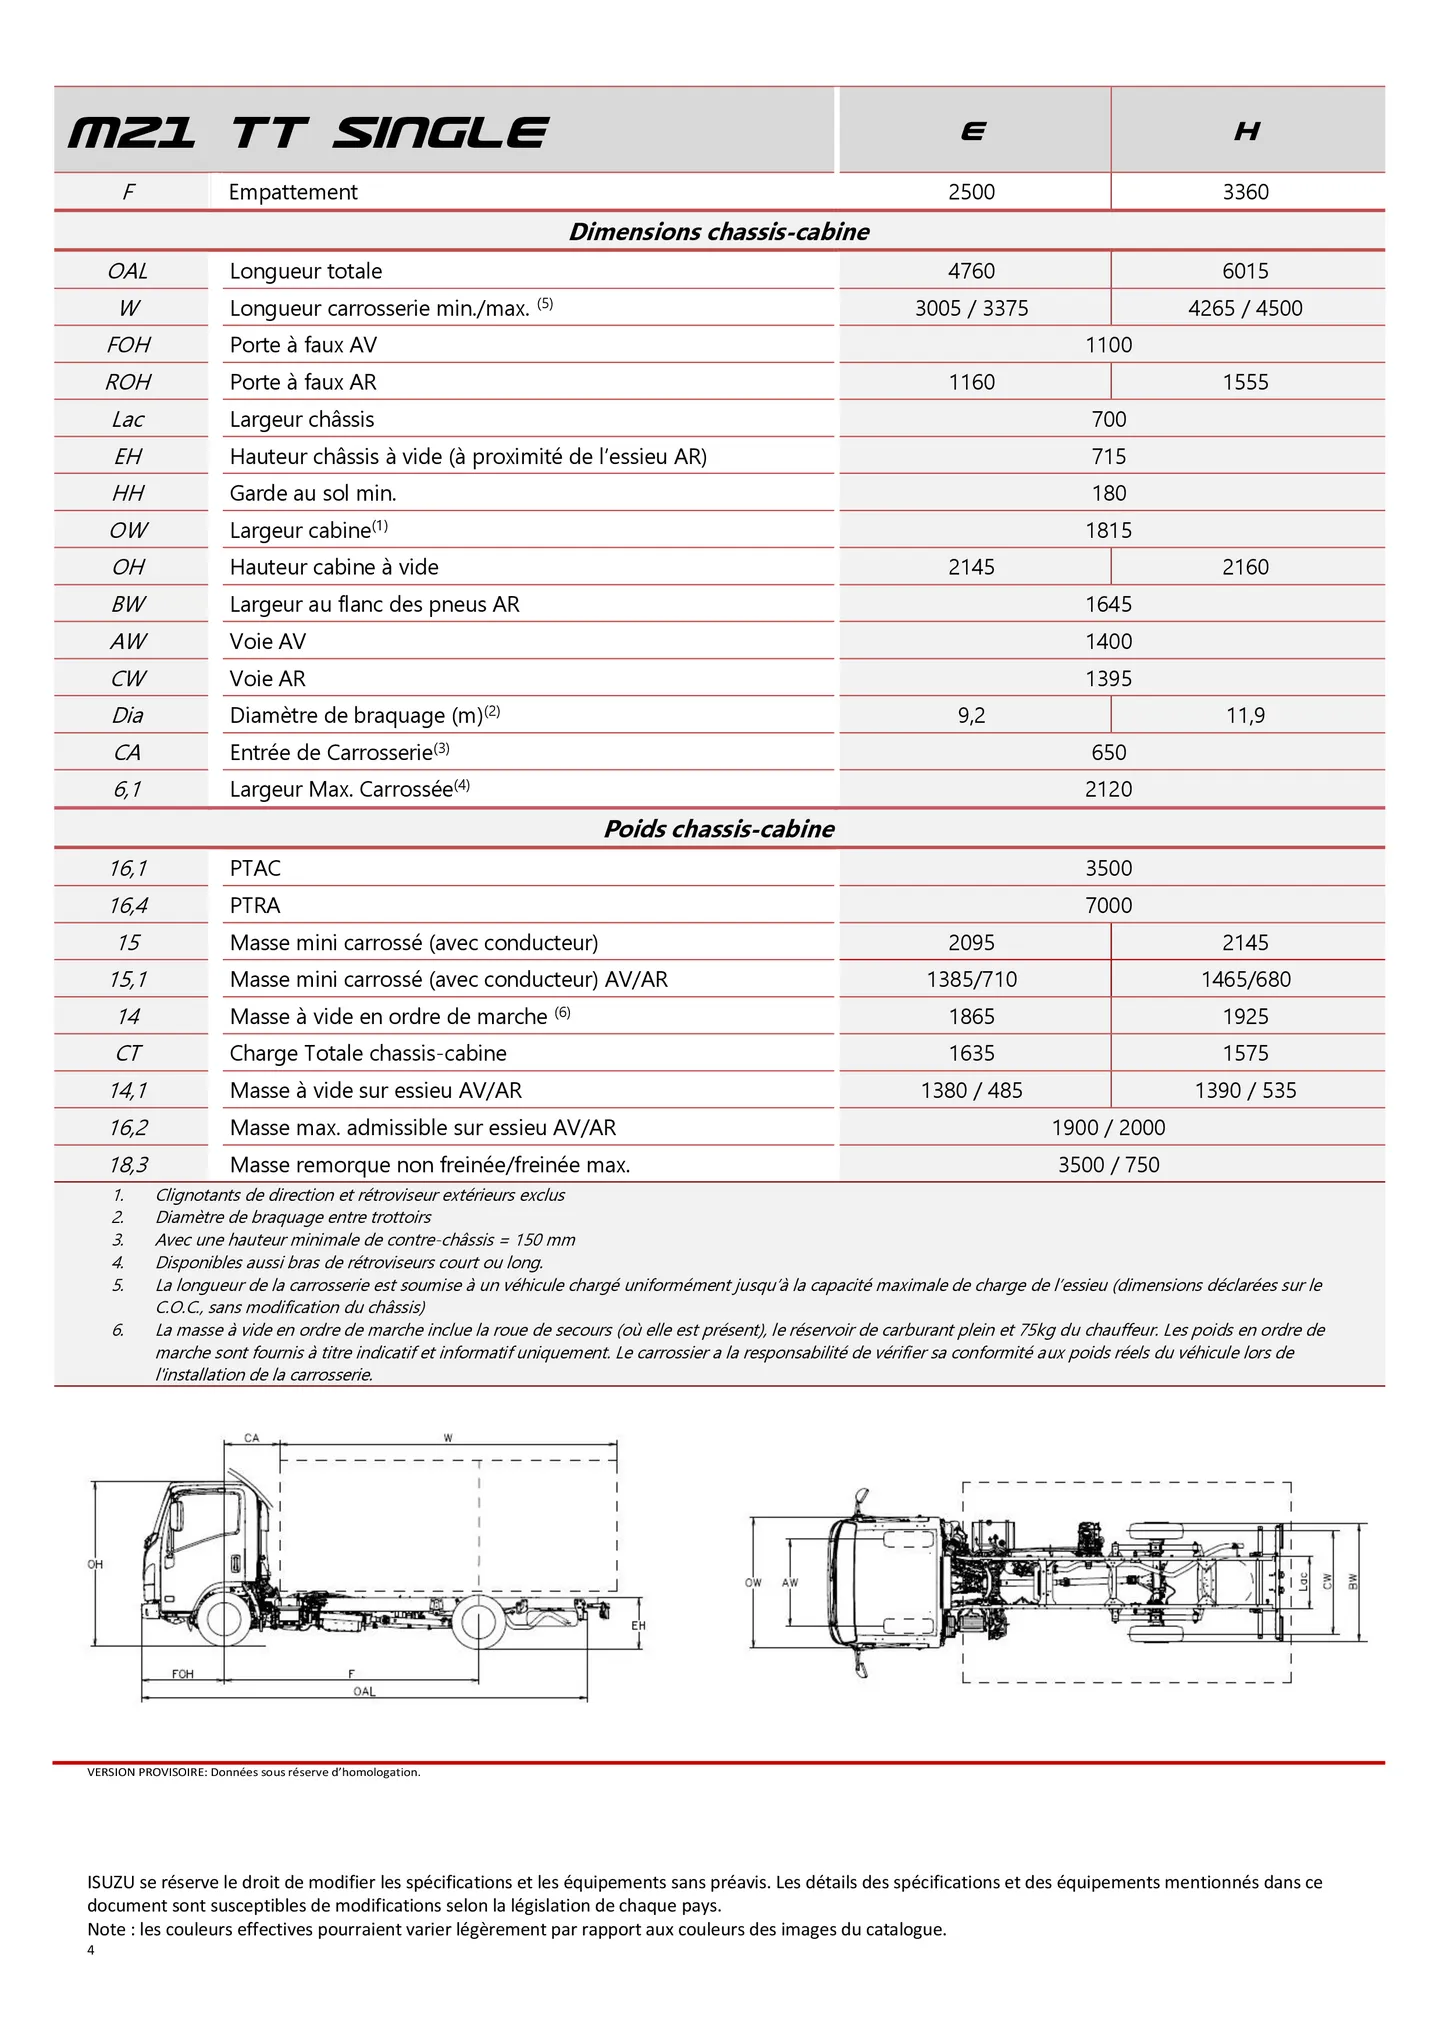 Catalogue Isuzu M21, page 00004